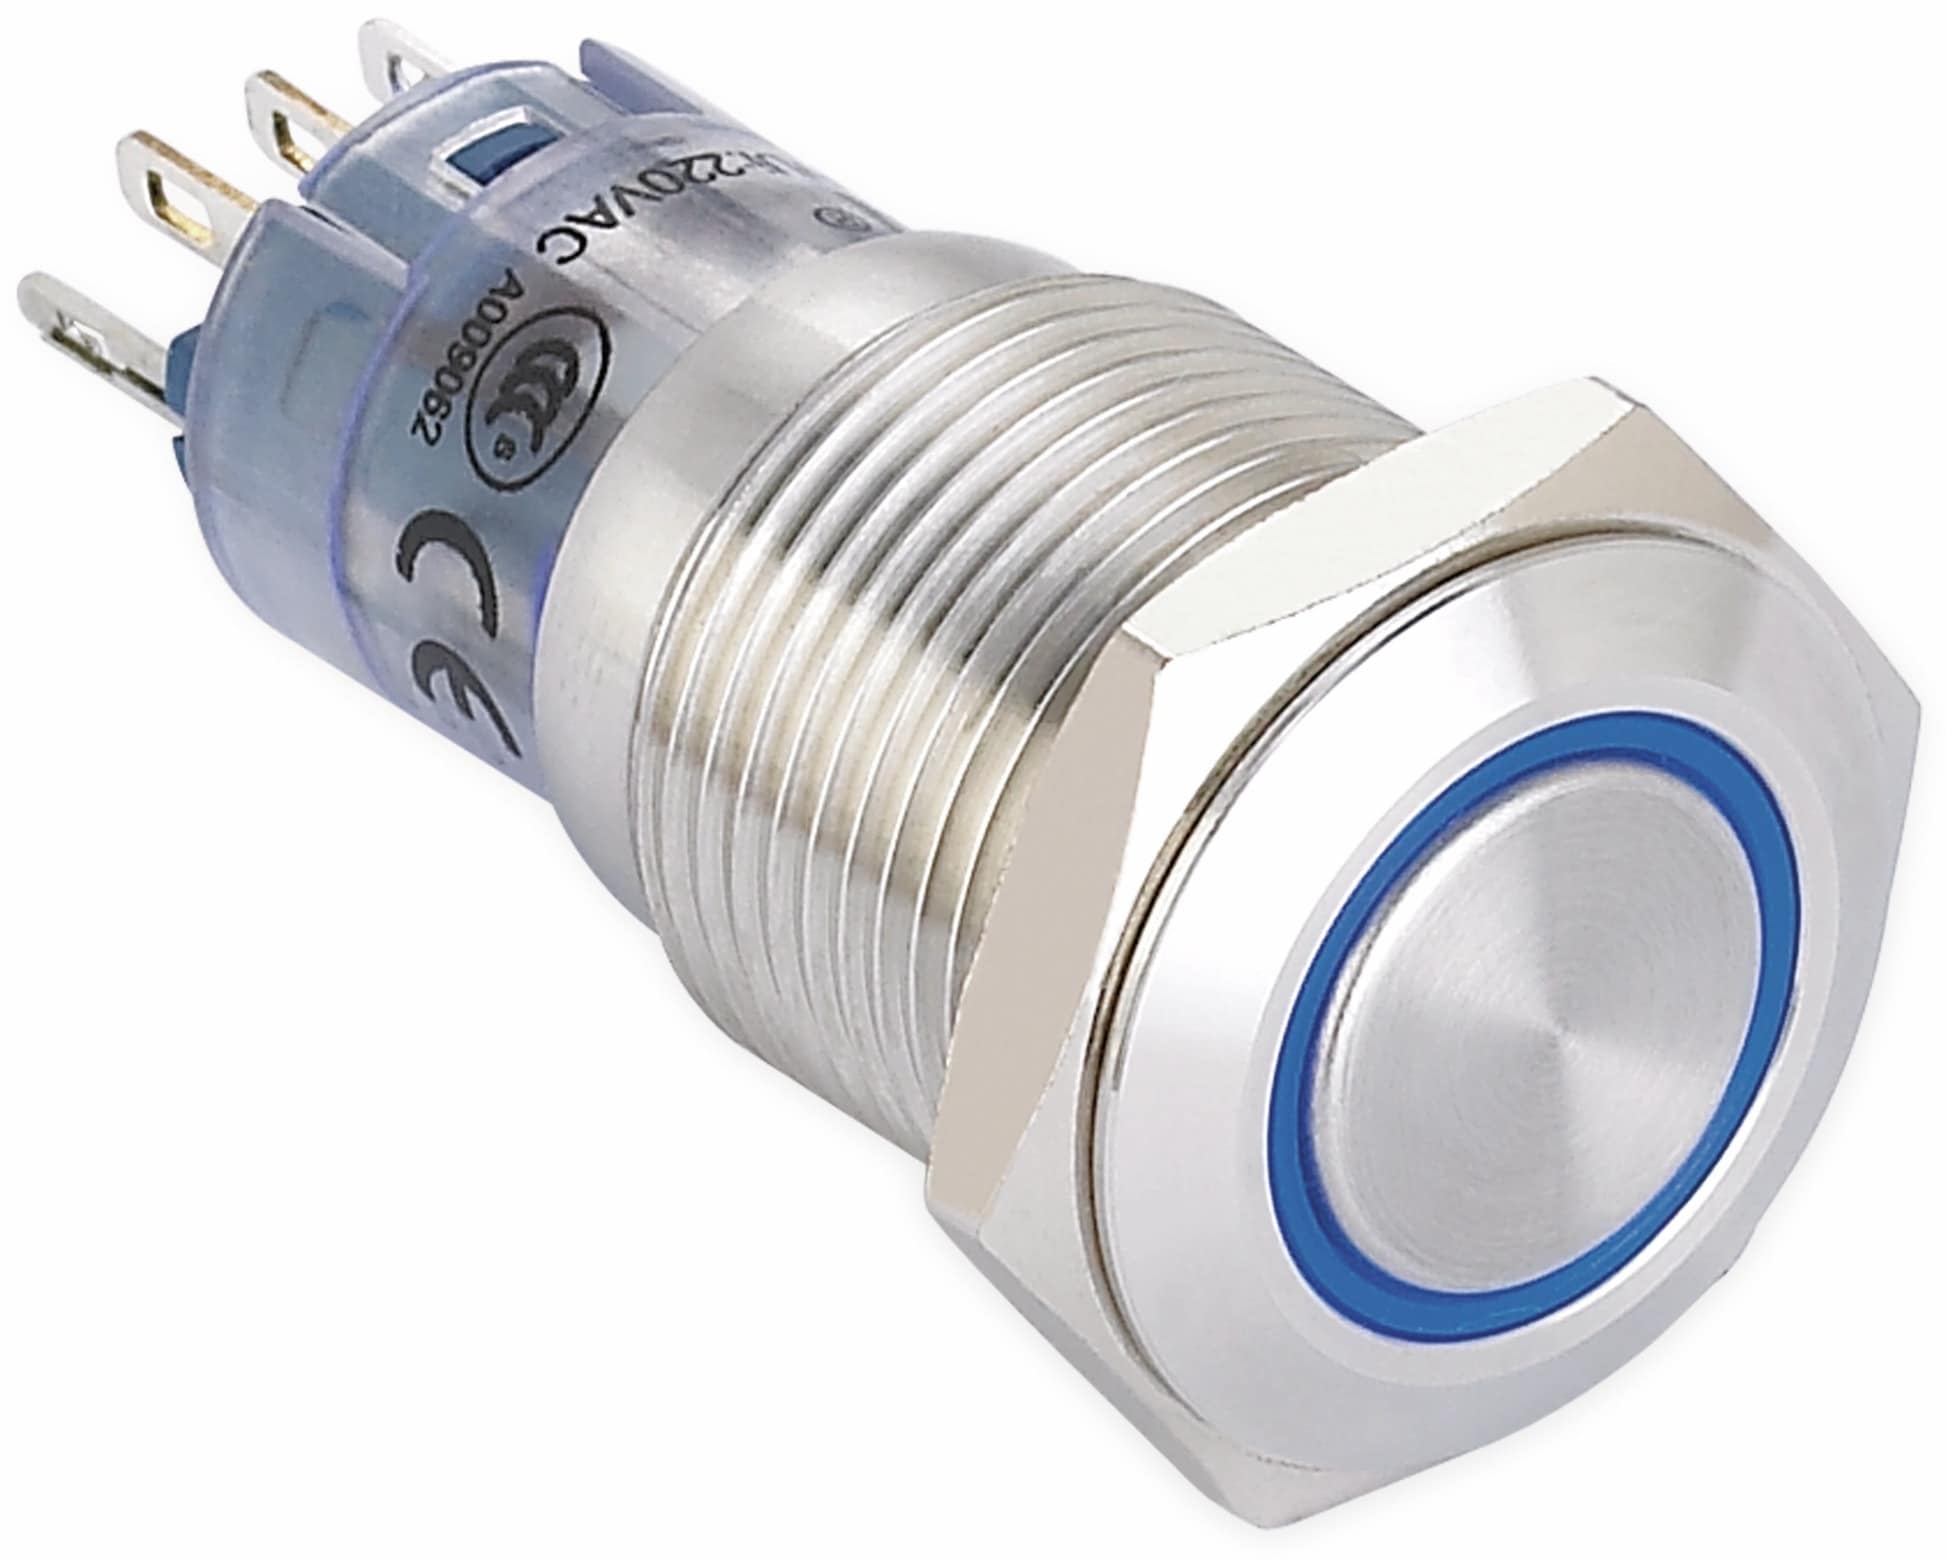 ONPOW Schalter, 24 V/DC, 1x Off/On, Beleuchtung weiß, Lötanschluss, flach rund, Edelstahl, 16 mm